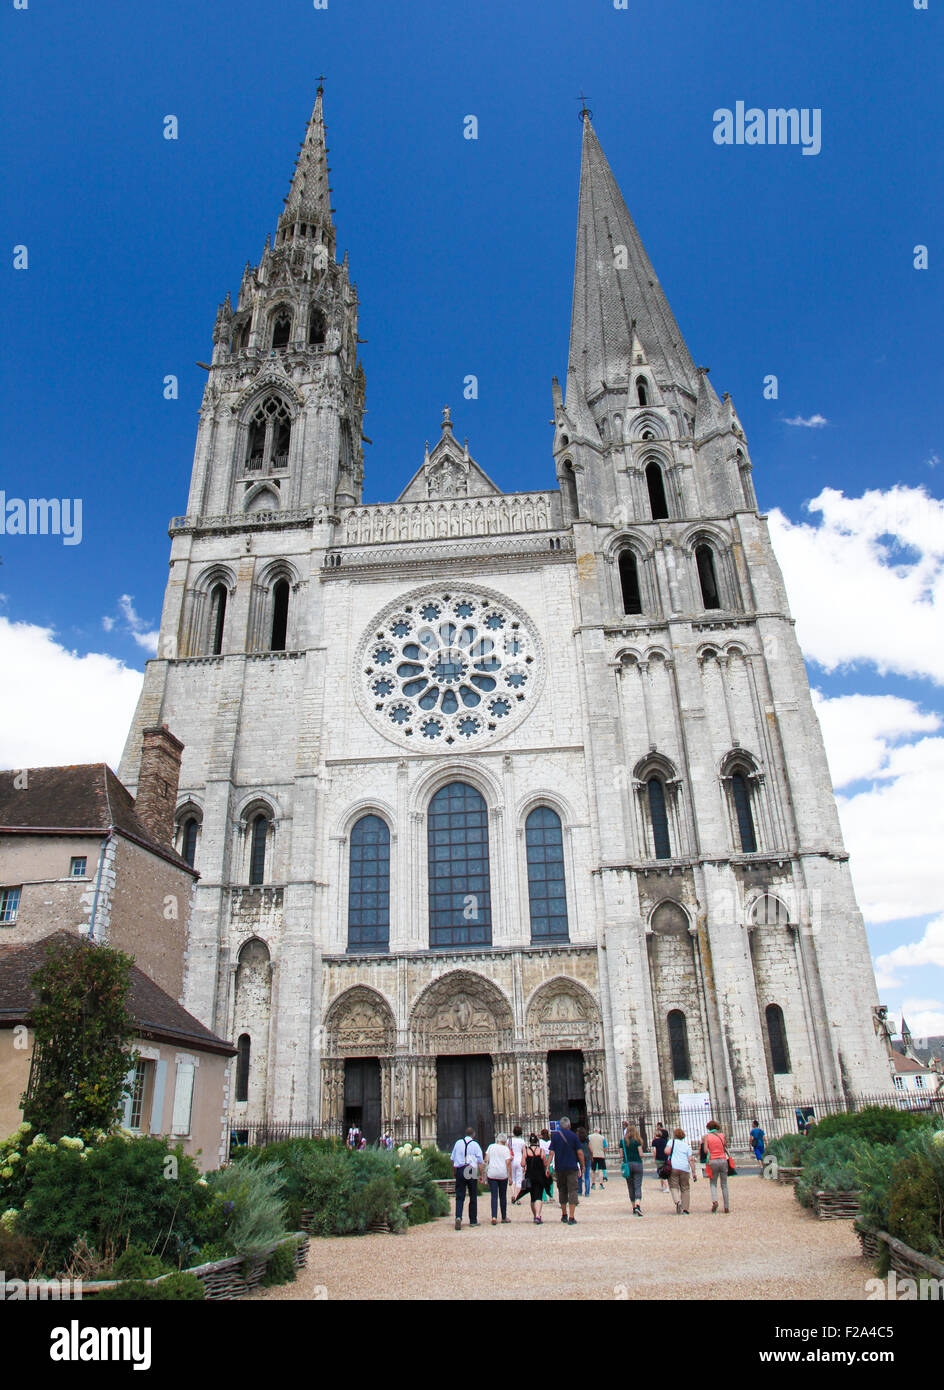 CHARTRES, FRANCE - 21 juillet 2015 : Cathédrale de Notre-Dame de Chartres, une cité médiévale cathédrale de Chartres, France Banque D'Images